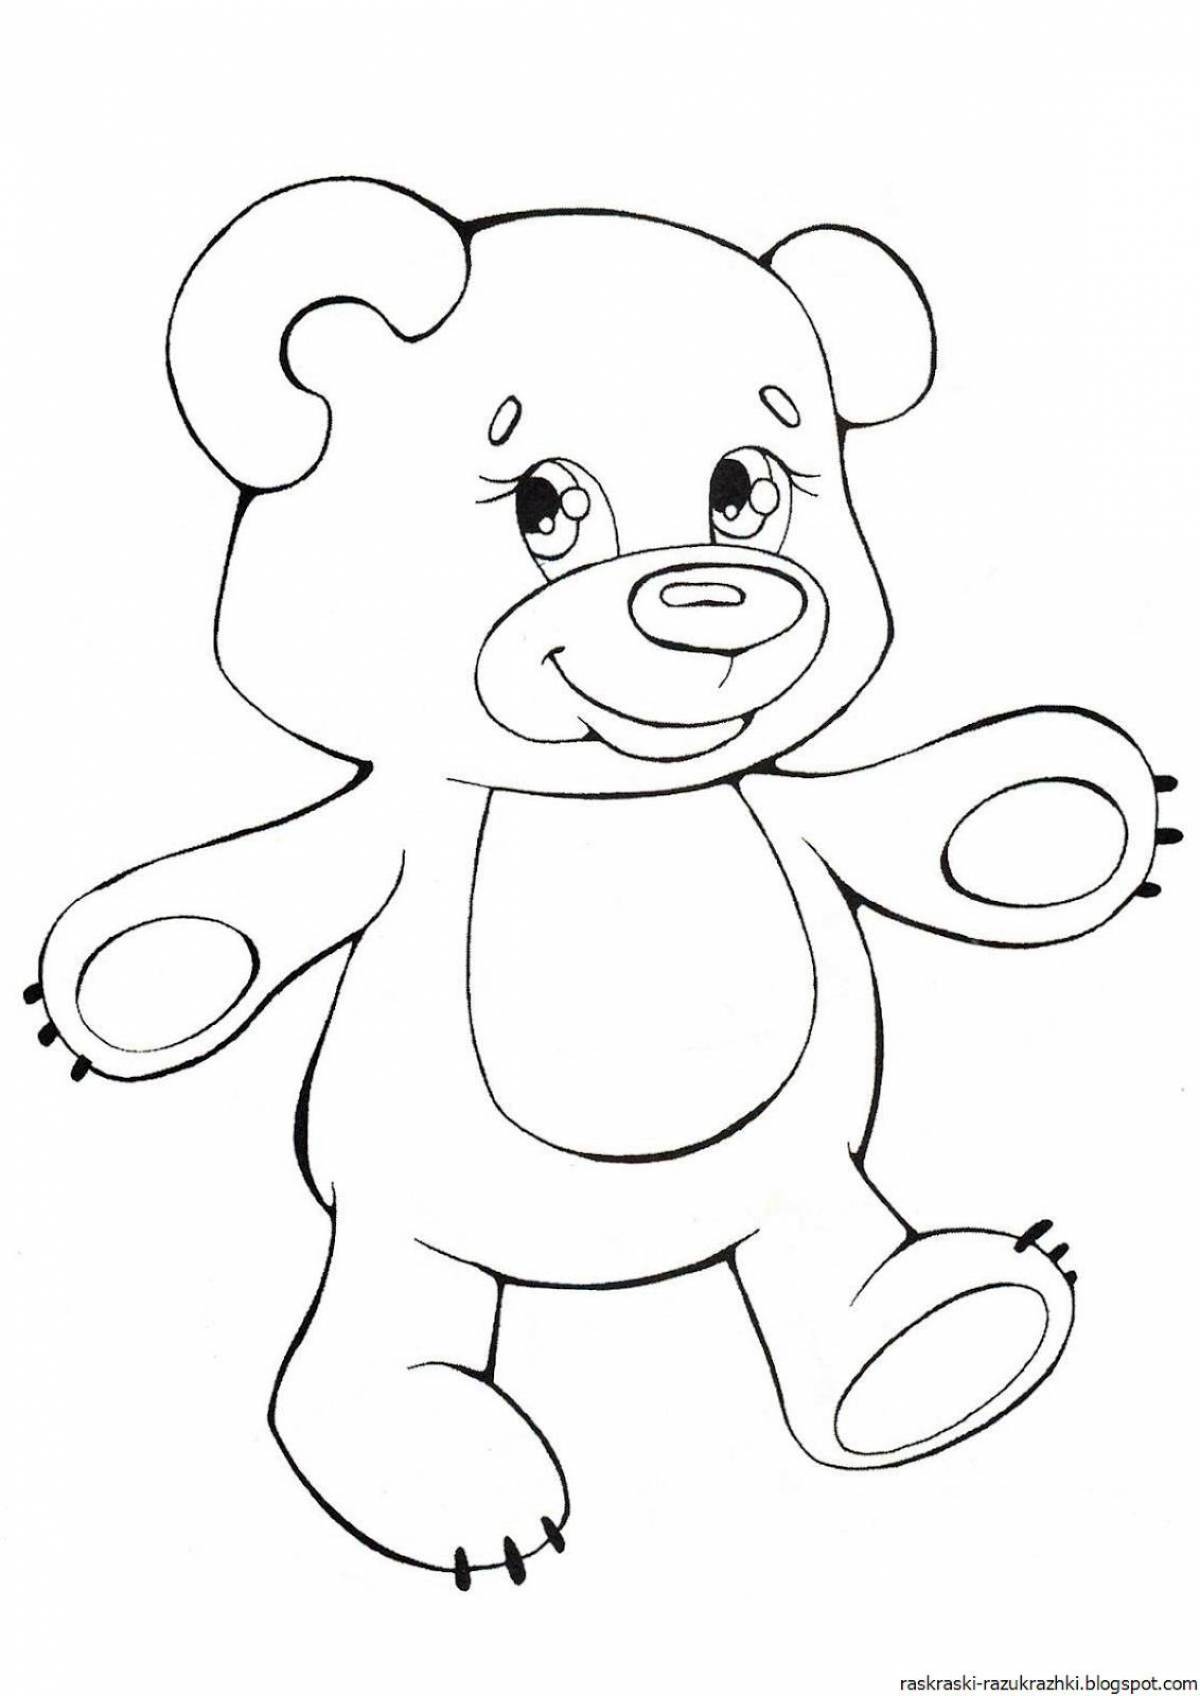 Радостный медведь раскраски для детей